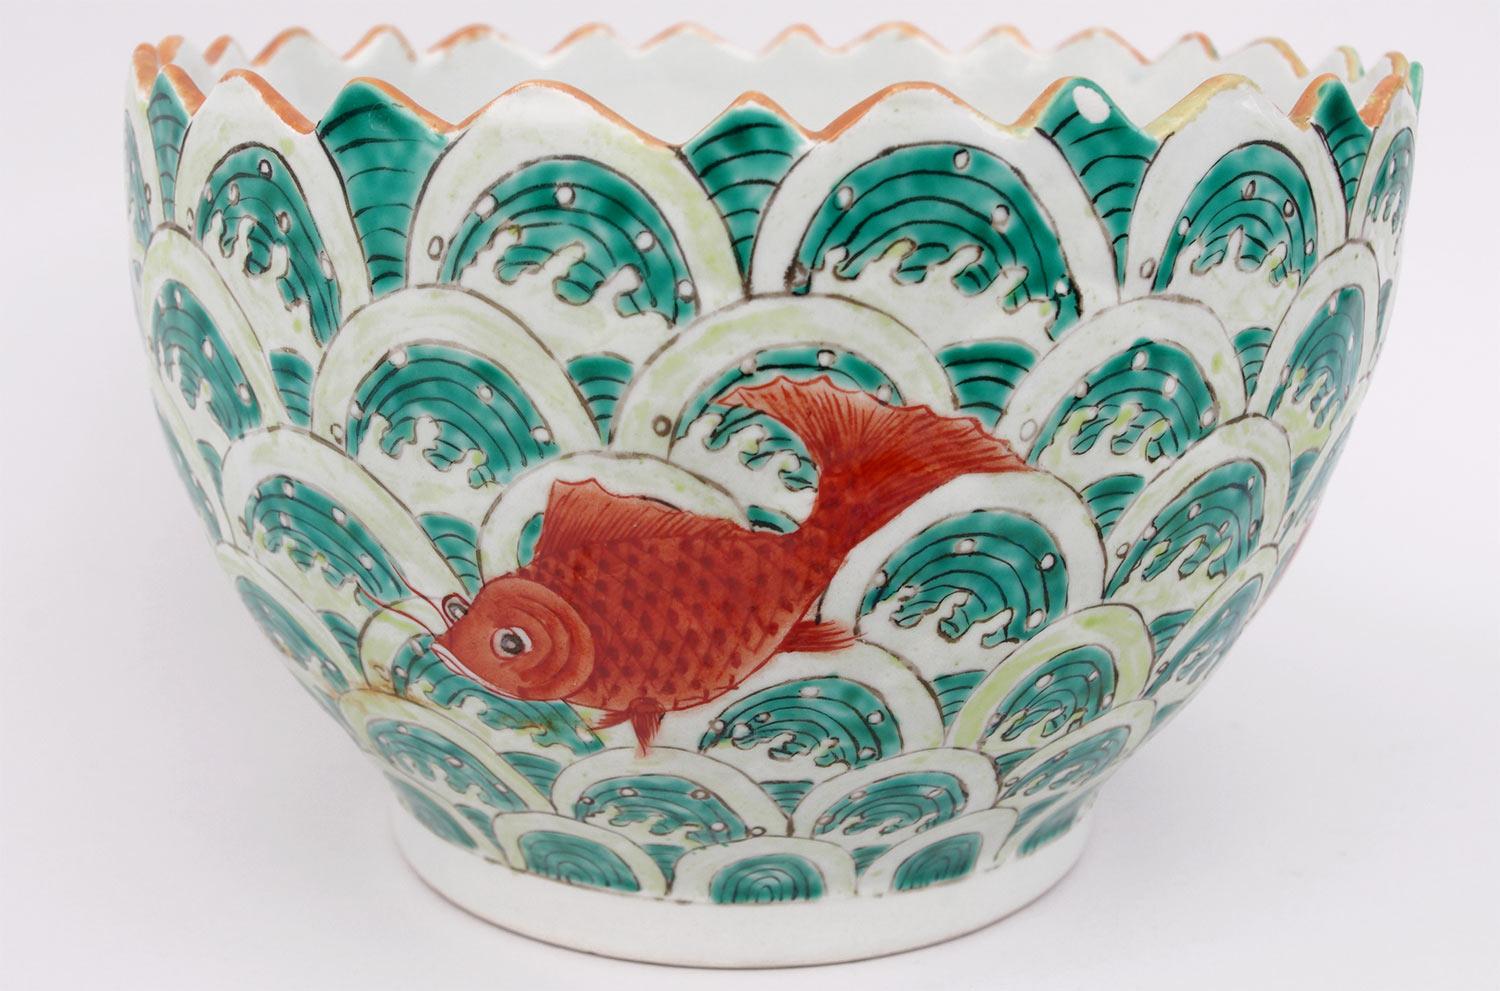 Tasse aus chinesischem Porzellan mit einem Dekor aus orangefarbenen Fischen auf grünem und weißem Hintergrund mit konzentrischen Bögen und weißen Wellen. Kante mit Wellenform.

Roter Schriftzug mit asiatischen Schriftzeichen.

Realisiertes Werk,